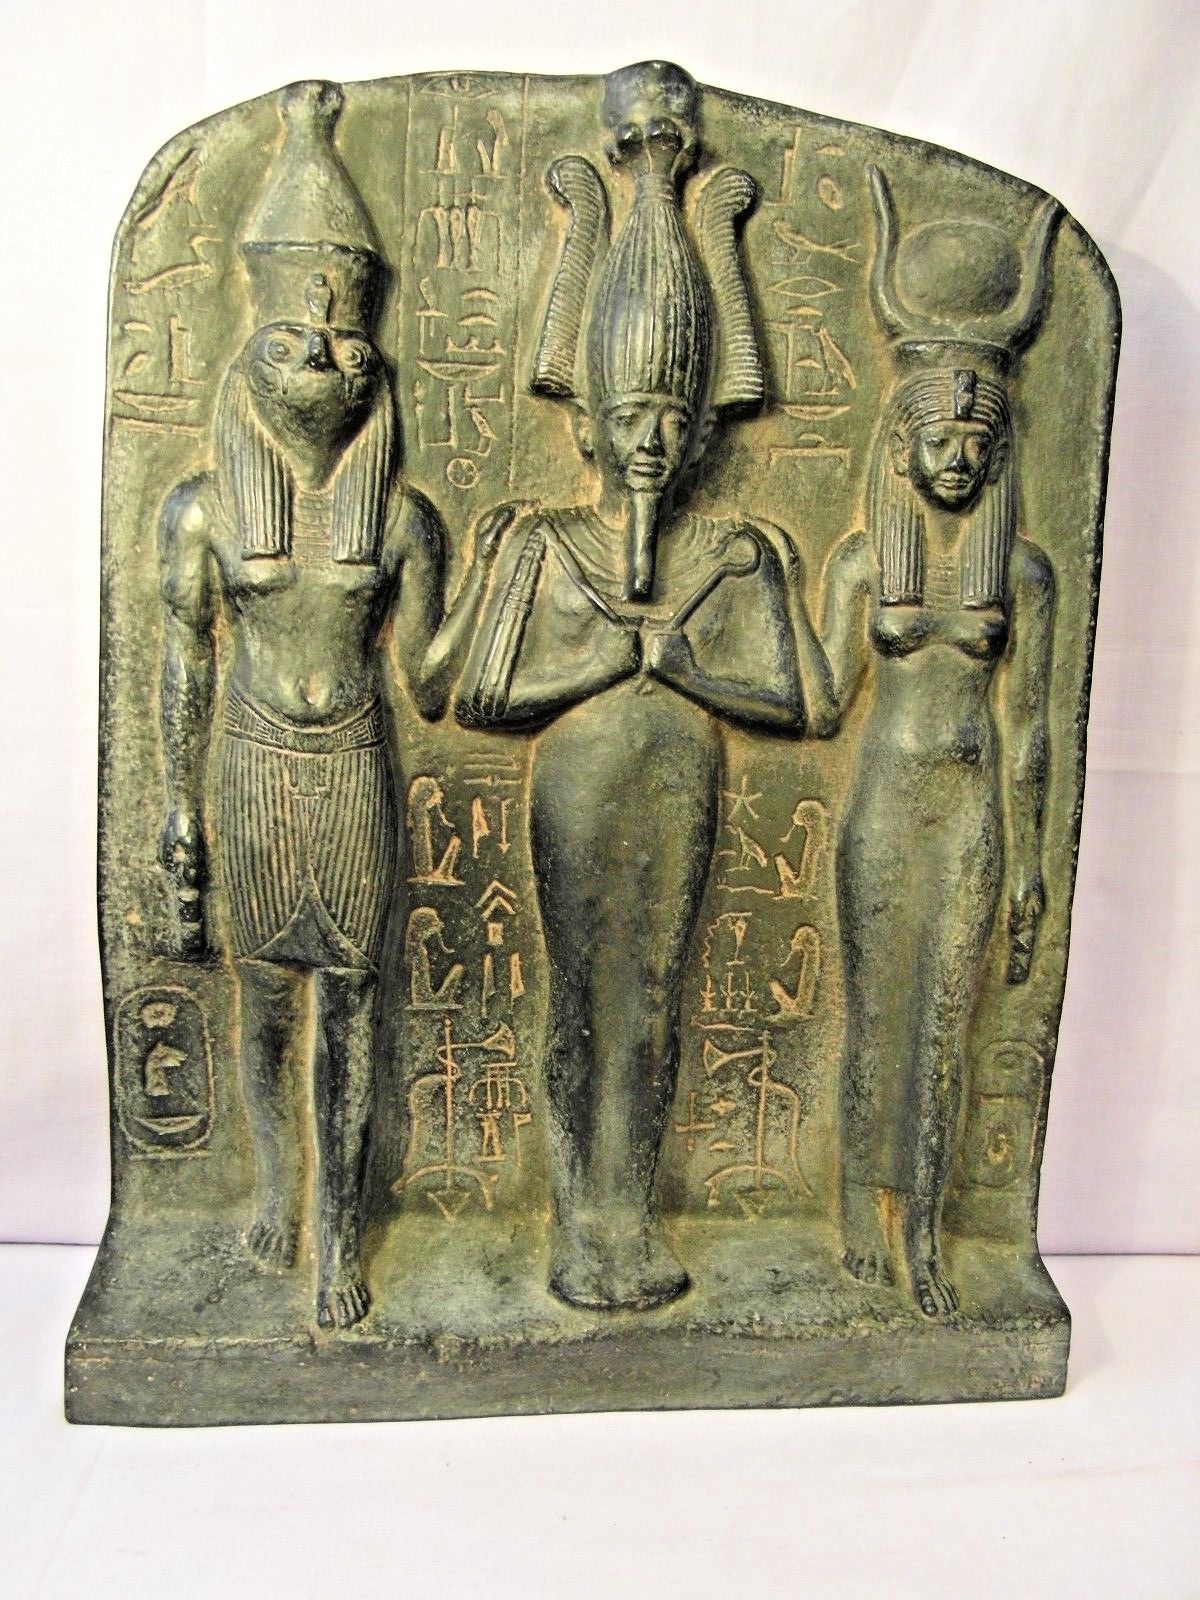 Égypte ancienne : 5 sculptures impressionnantes ! 